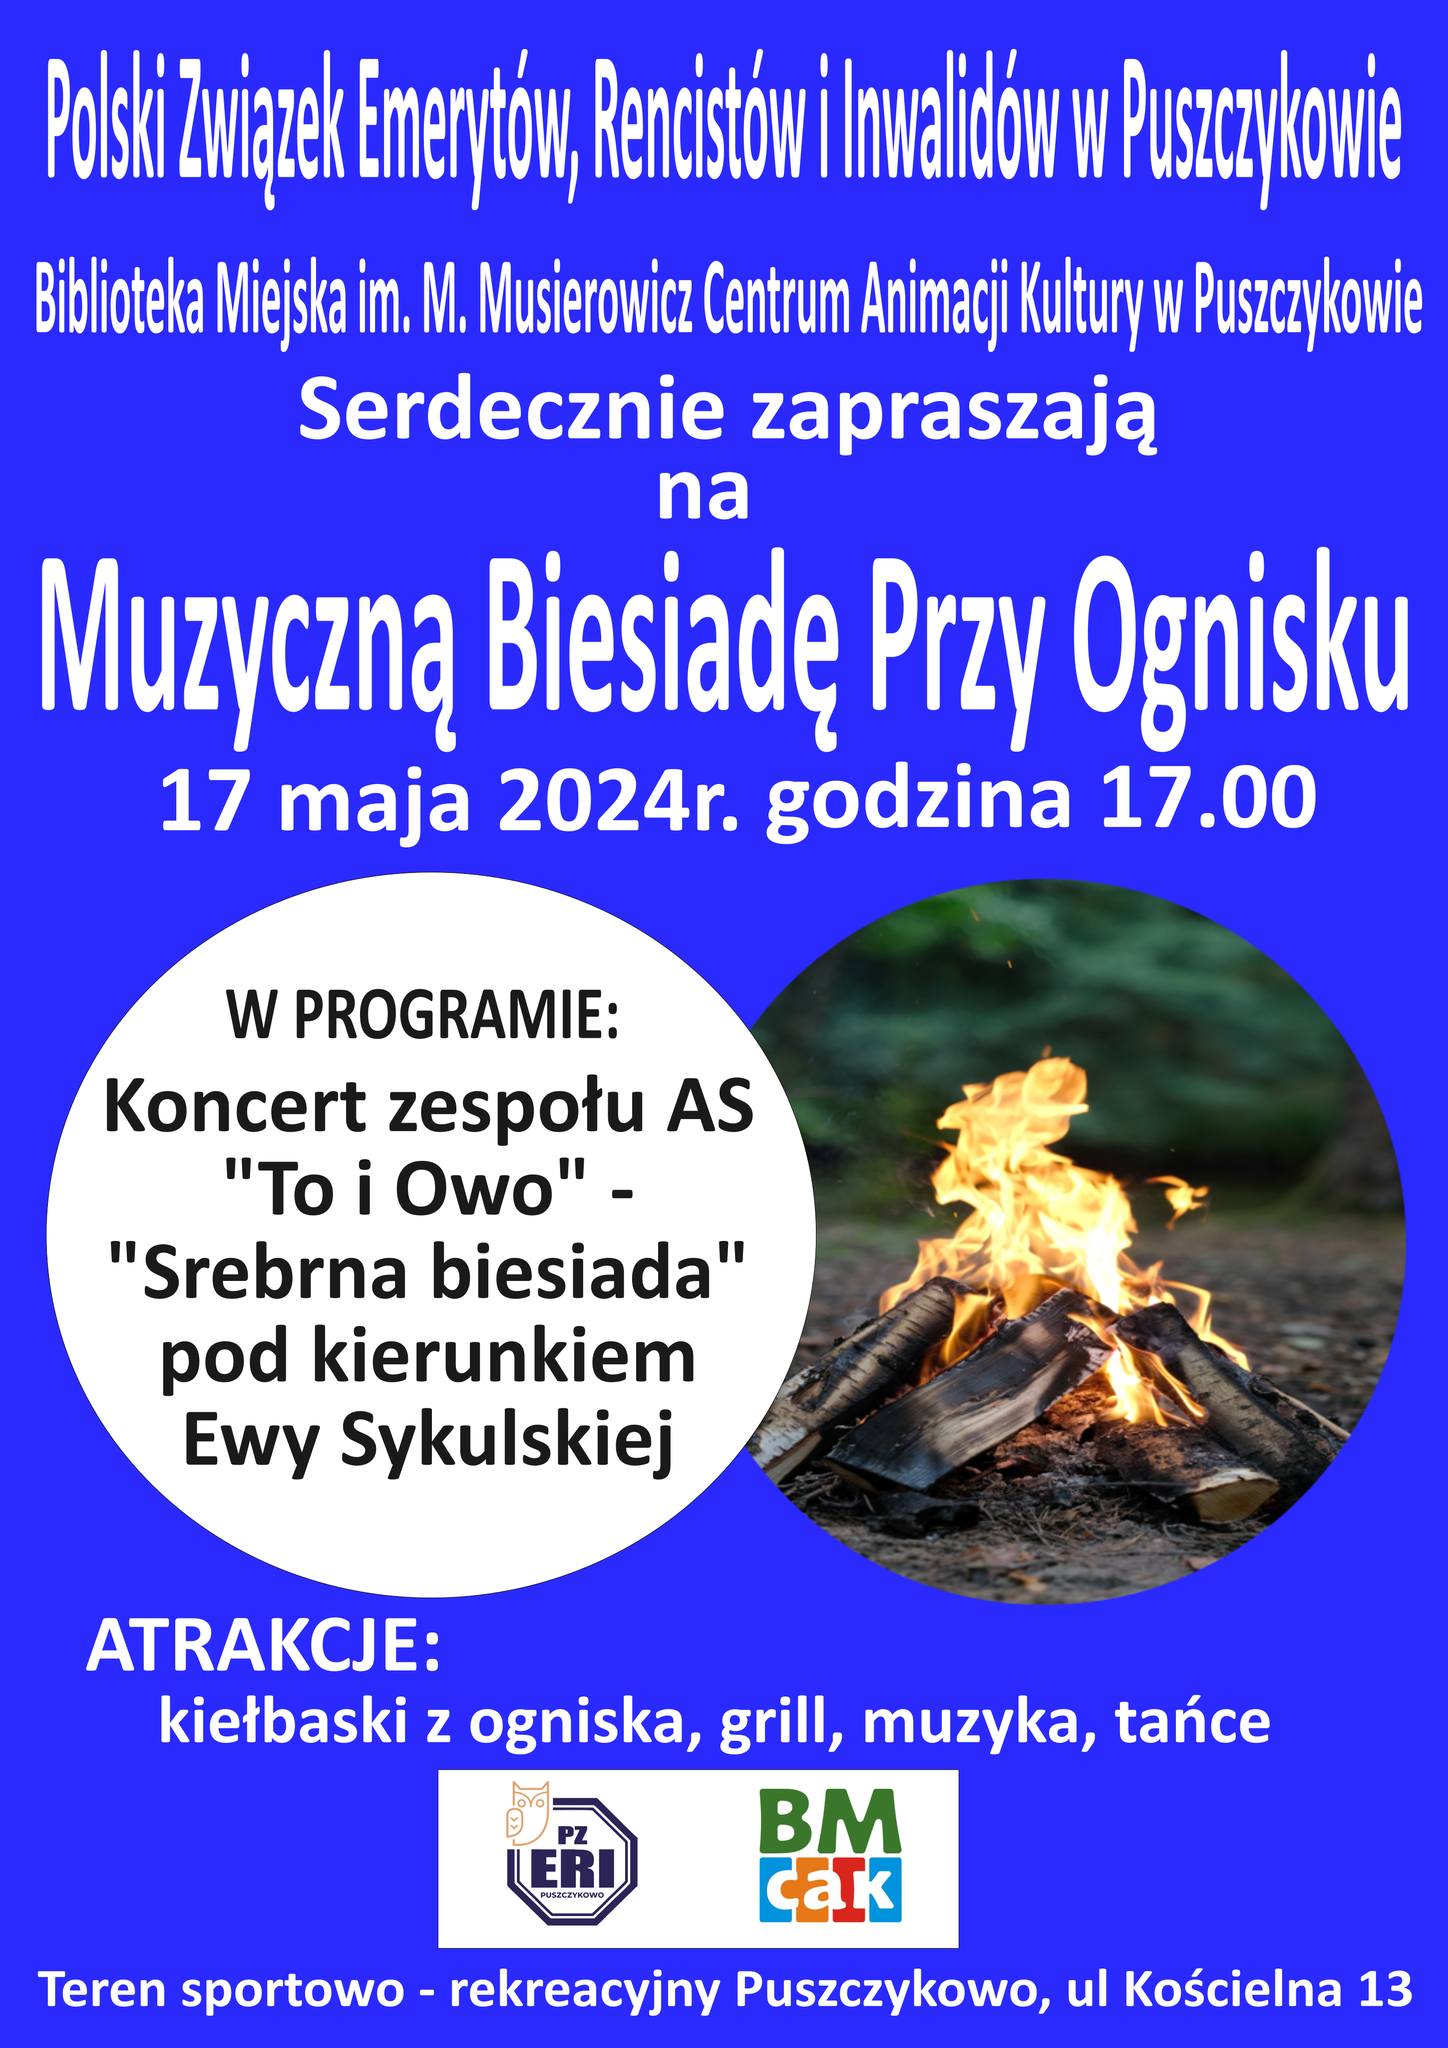 Polski Związek, Emerytów, Rencistów i Inwalidów w Puszczykowie zaprasza na Muzyczną Biesiadę przy ognisku!